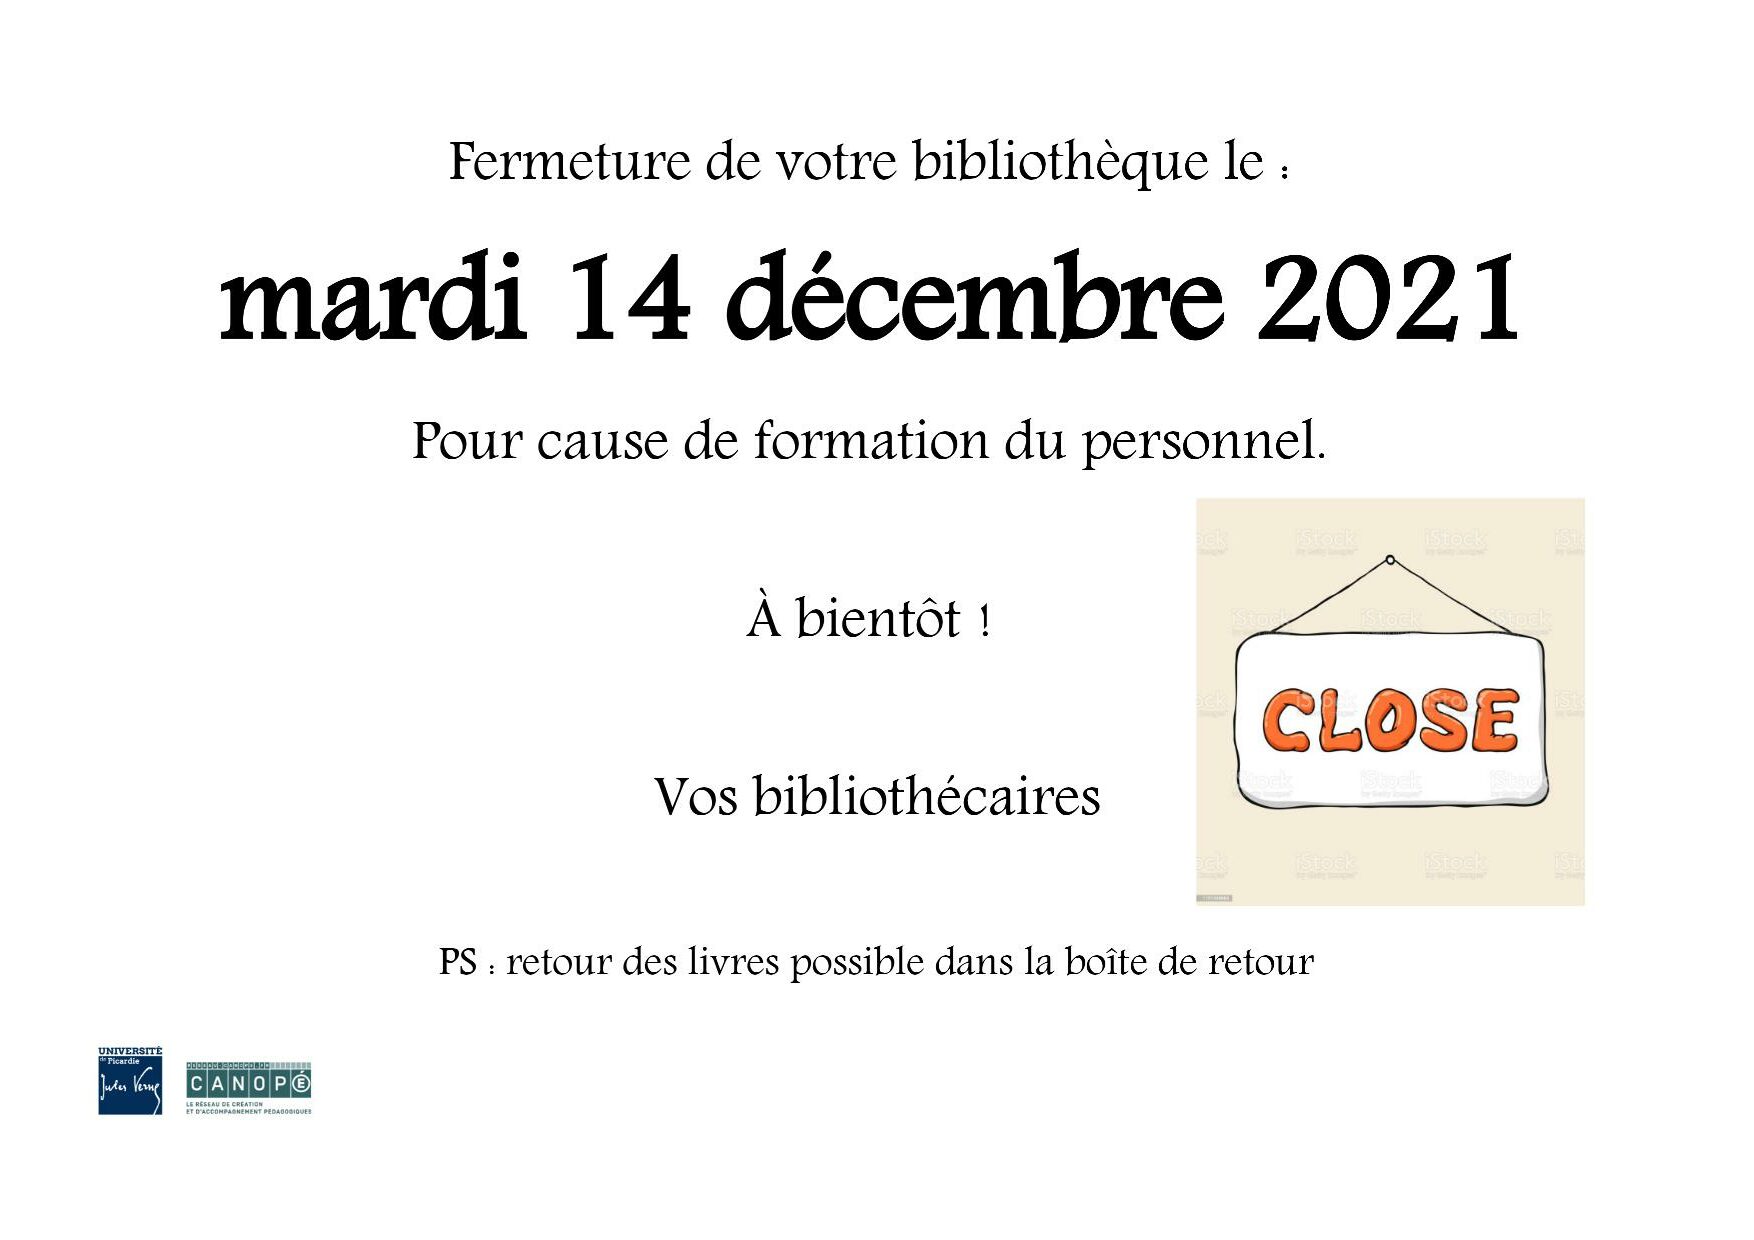 Affiche pour annoncer la fermeture de la BU de l'inspé de Laon le mardi 14 décembre 2021.